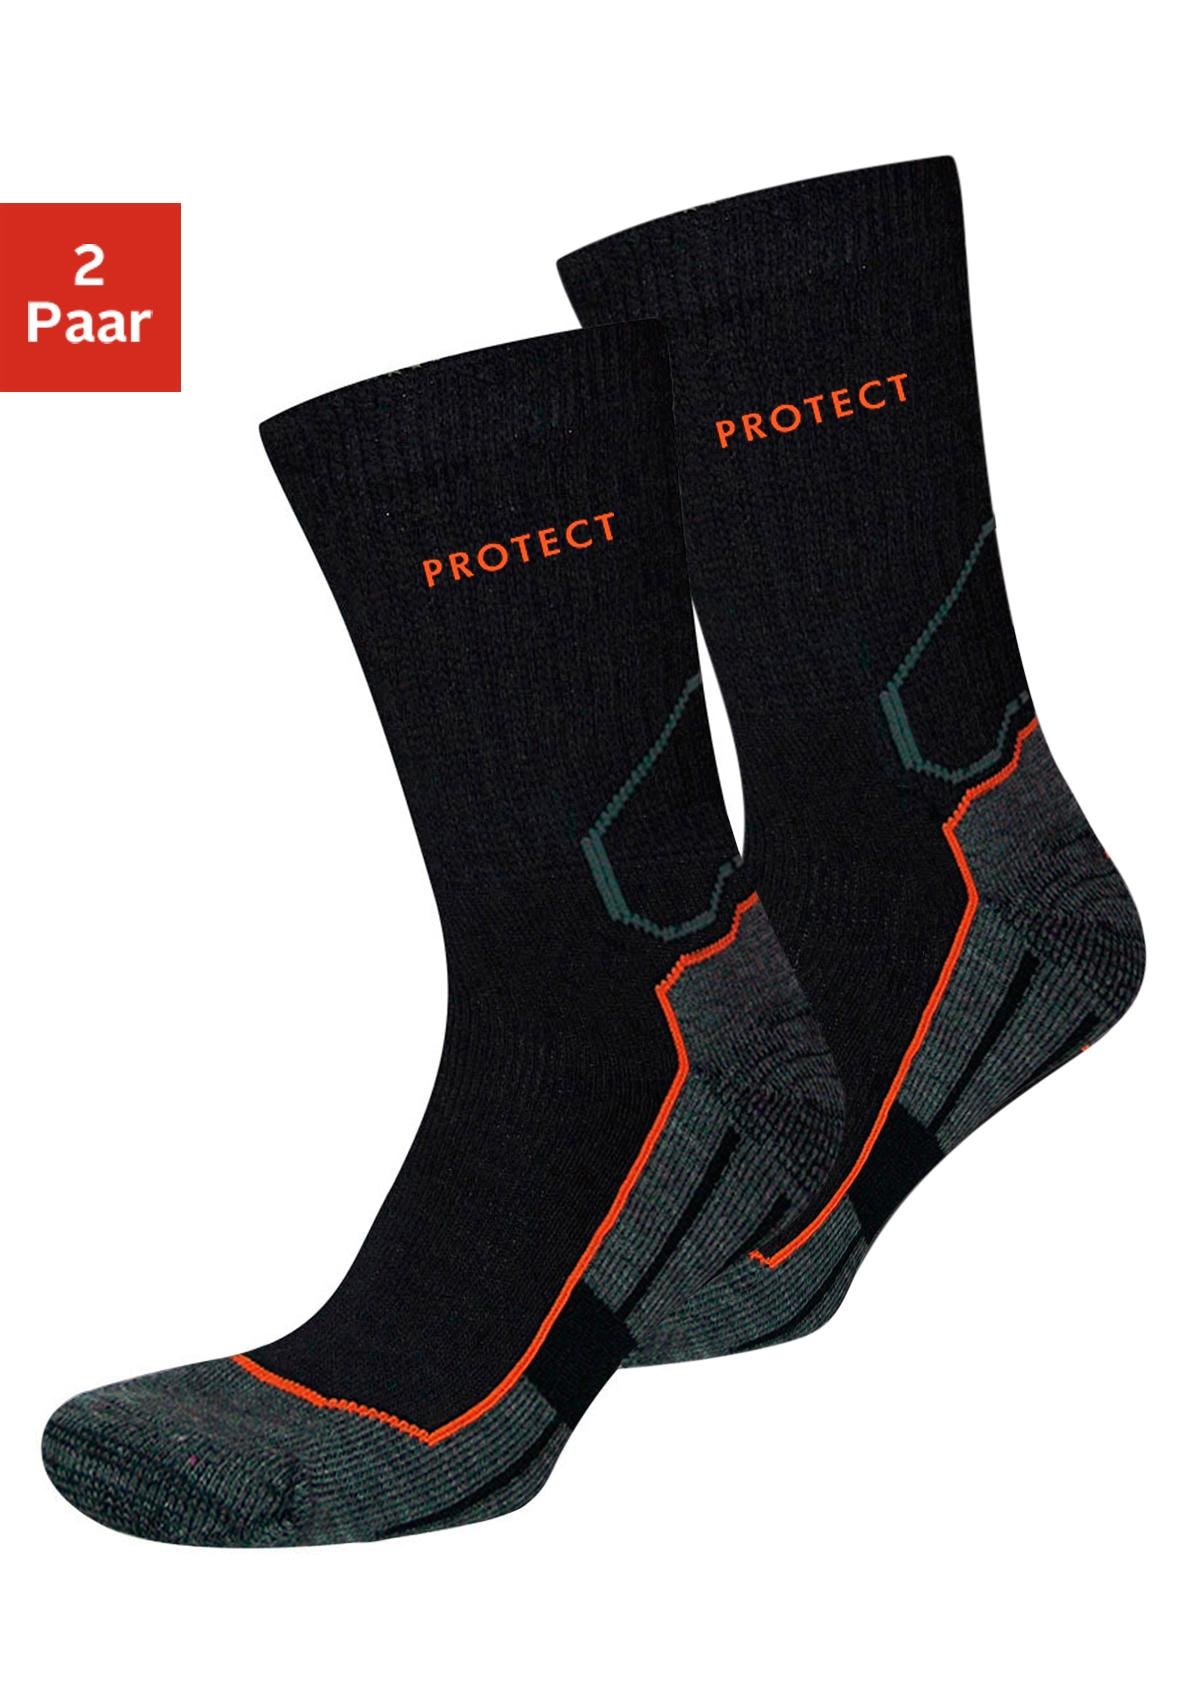 Kappa Socken, - in kaufen bei vorteilhaftem 3 Paar Pack OTTO